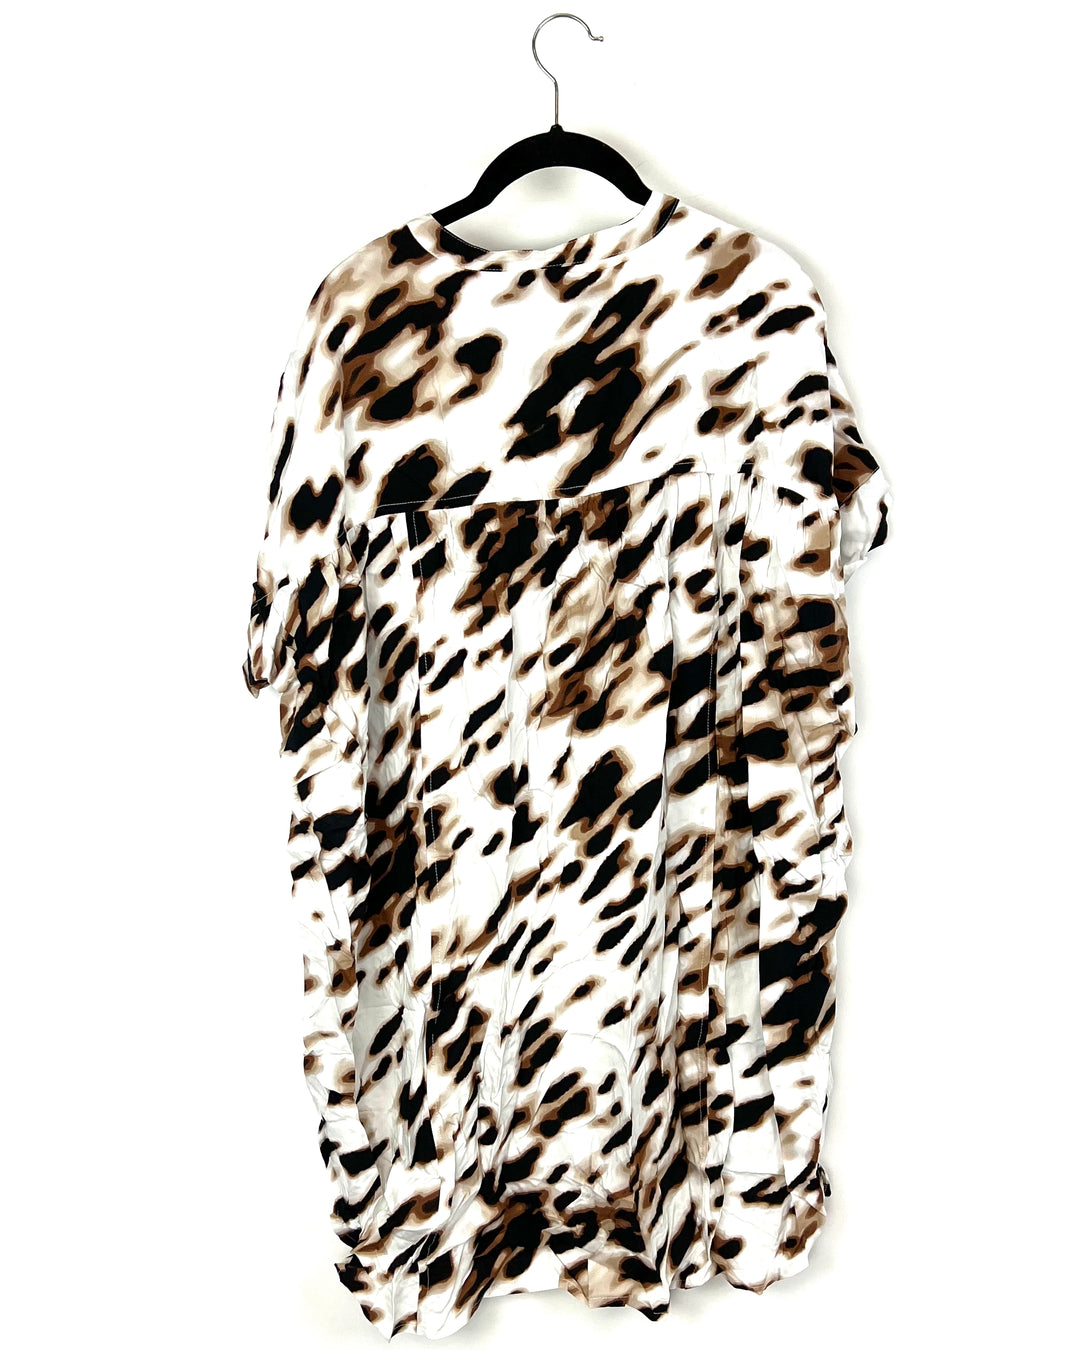 Leopard Loungewear / Sleepwear Dress - Oversized Small